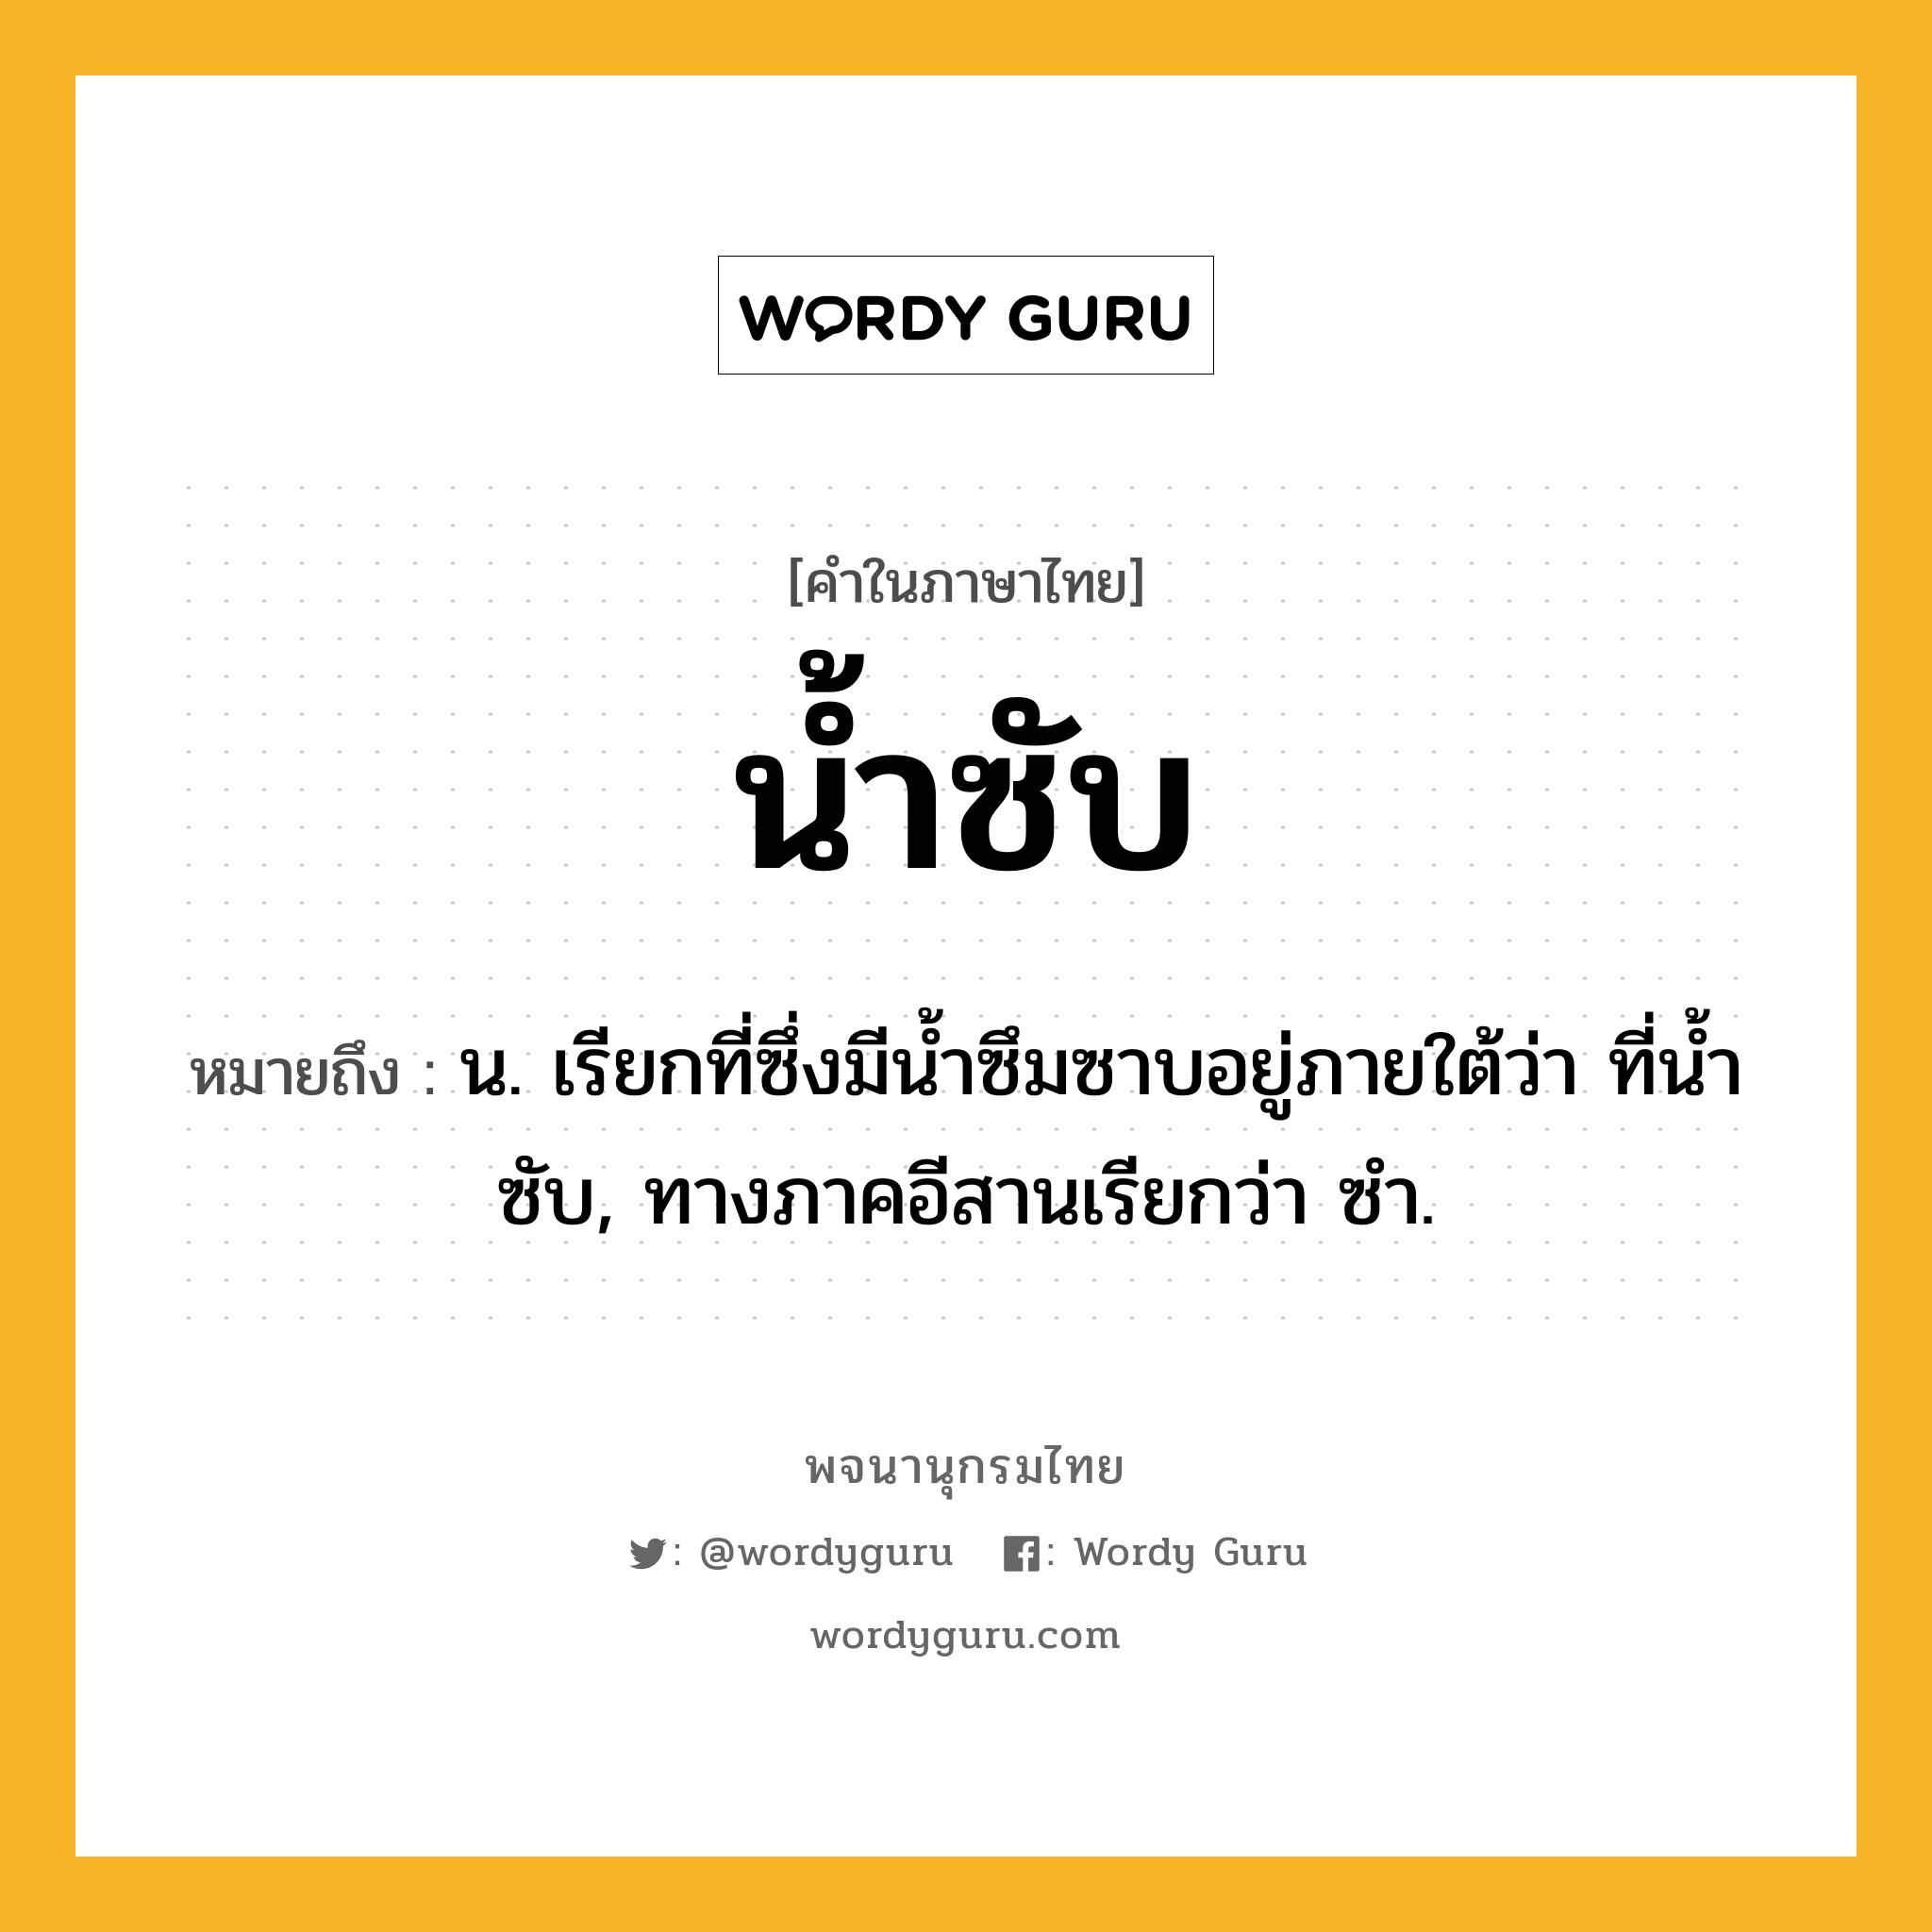 น้ำซับ ความหมาย หมายถึงอะไร?, คำในภาษาไทย น้ำซับ หมายถึง น. เรียกที่ซึ่งมีนํ้าซึมซาบอยู่ภายใต้ว่า ที่นํ้าซับ, ทางภาคอีสานเรียกว่า ซํา.